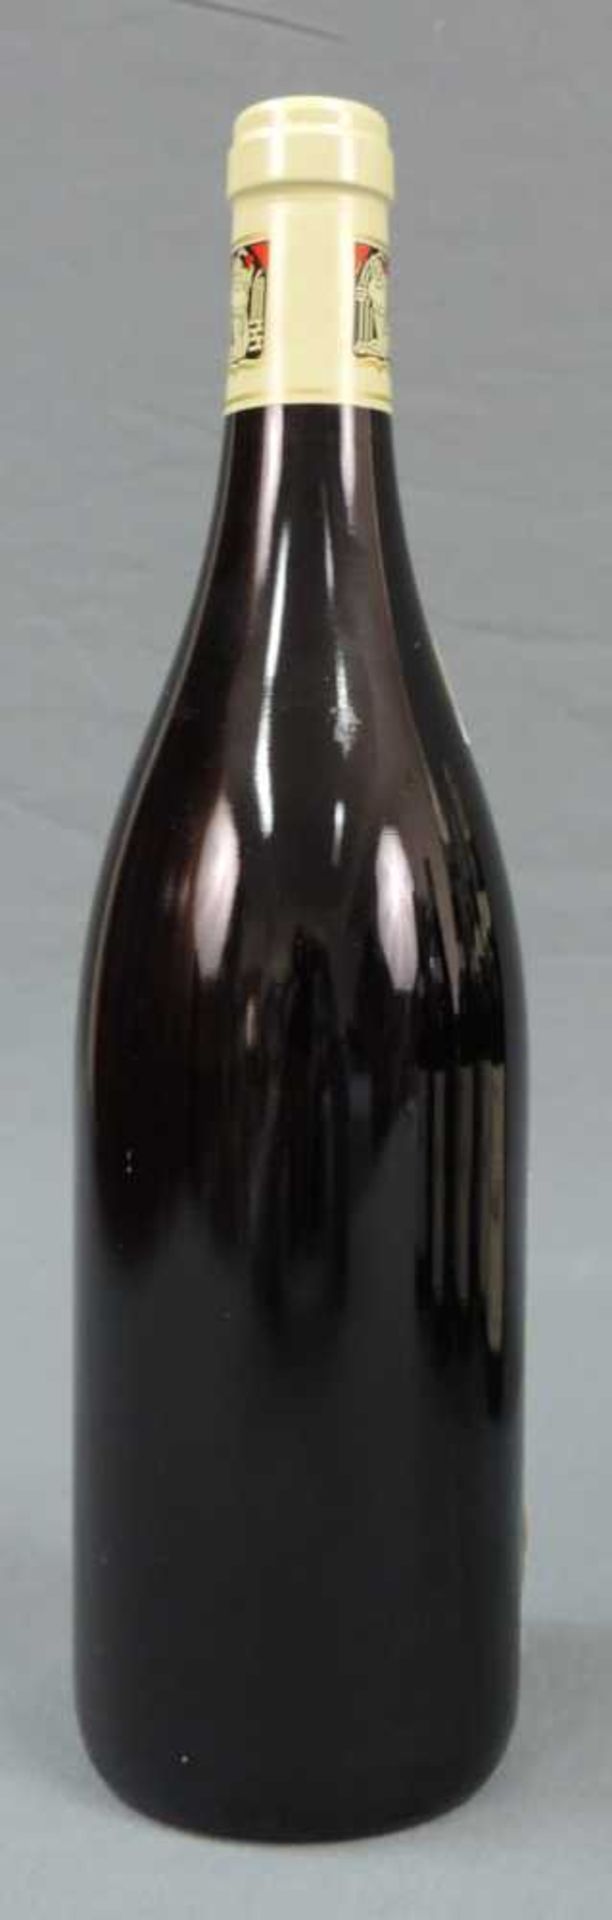 2004 Domaine Prieur - Brunet, Pommard Premier Cru Les Platieres, France. 10 Flaschen, 750 ml, - Image 6 of 6